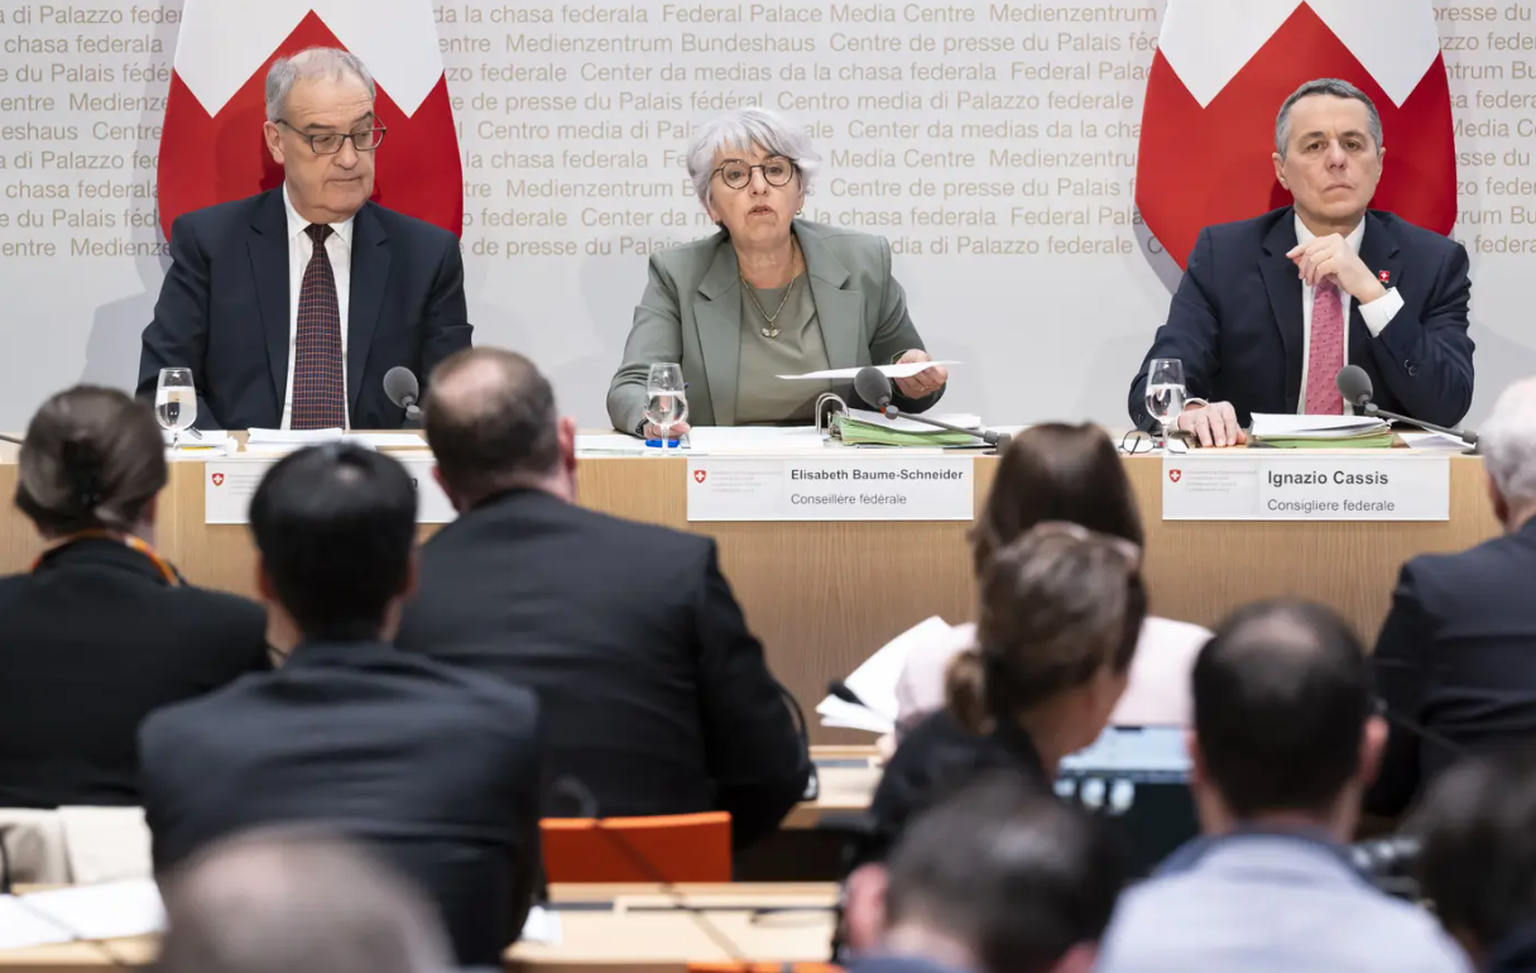 La délégation du Conseil fédéral présentant le nouveau mandat de négociation le 15 décembre : Ignazio Cassis (à droite), Elisabeth Baume-Schneider et Guy Parmelin.